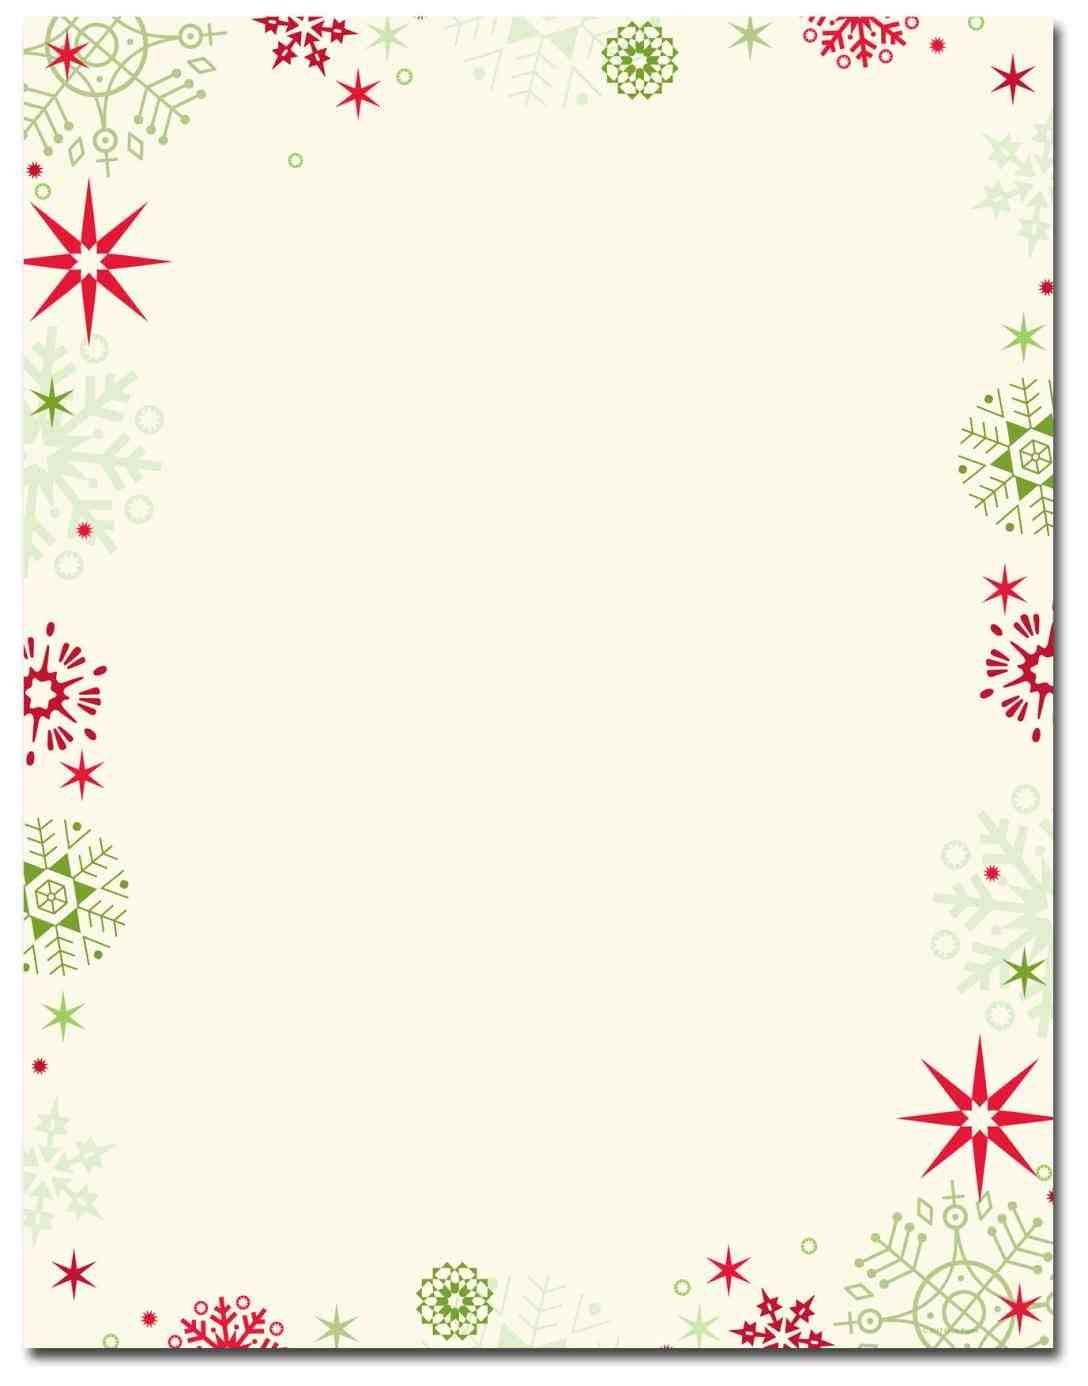 New Free Printable Christmas Stationary Borders At Temasistemi - Free Printable Christmas Borders